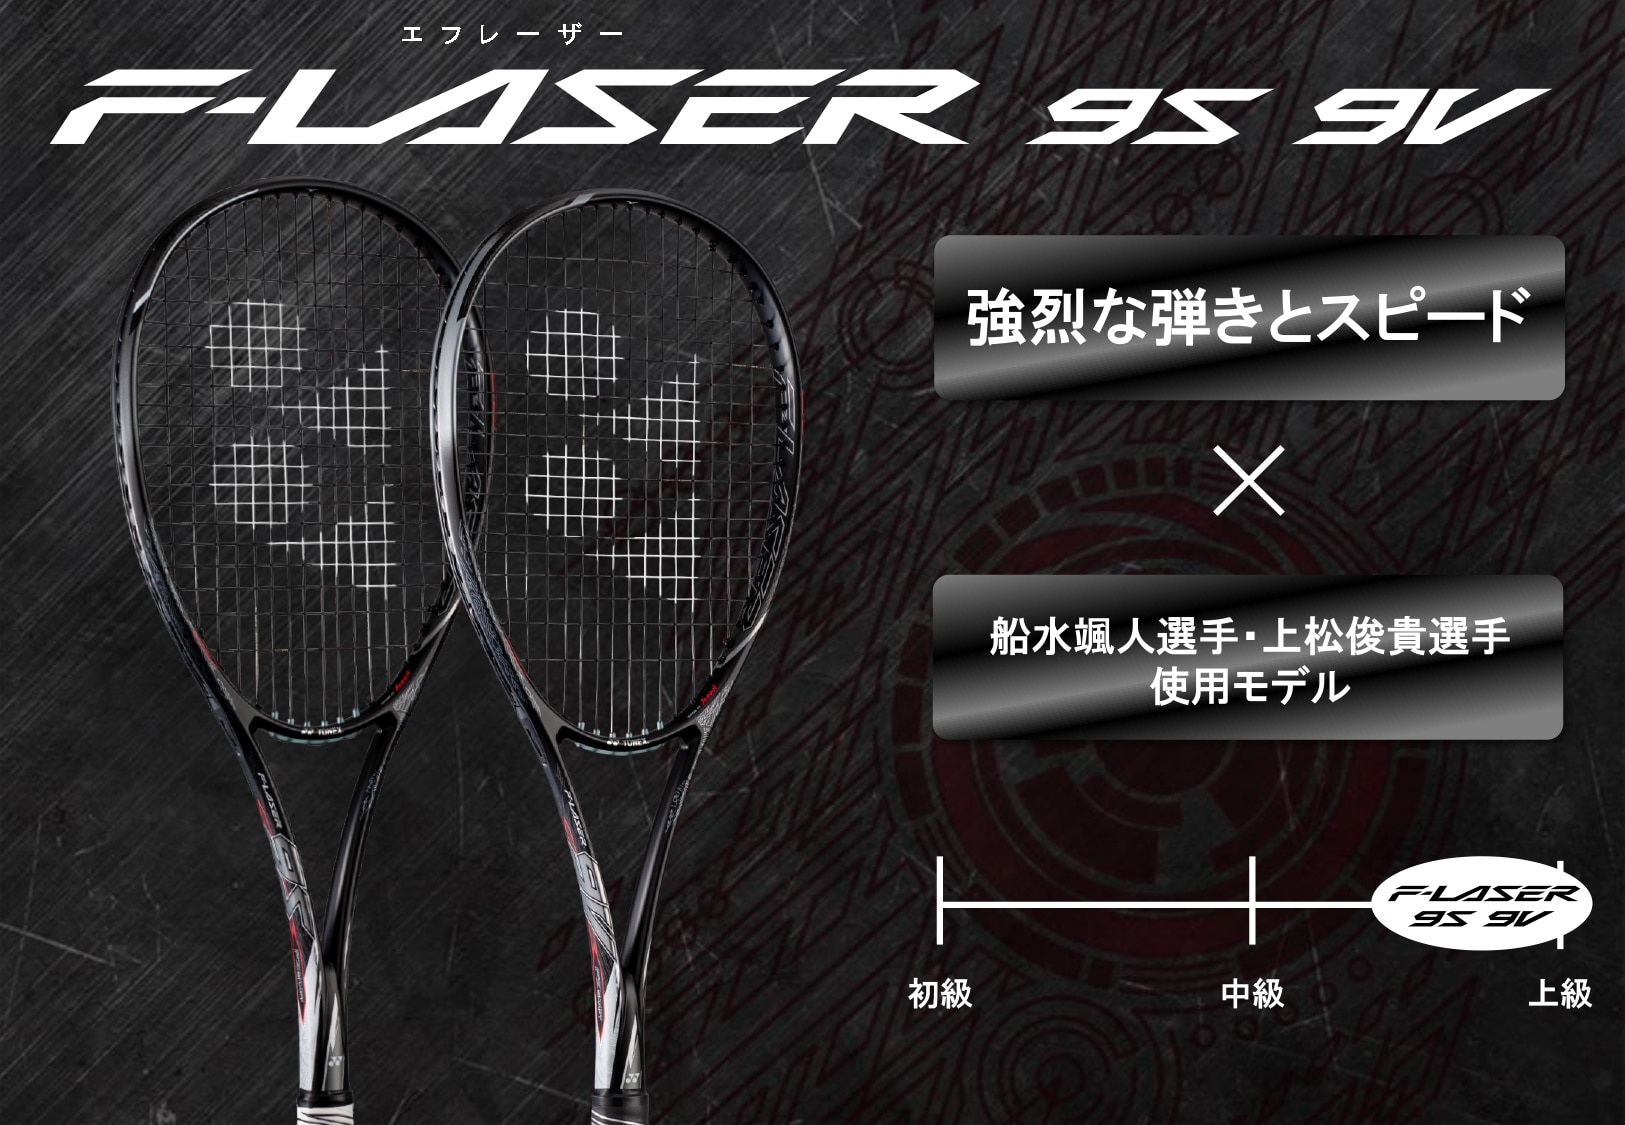 エフレーザー9V UL2 ラケット(軟式用) テニス スポーツ・レジャー 日本販促品